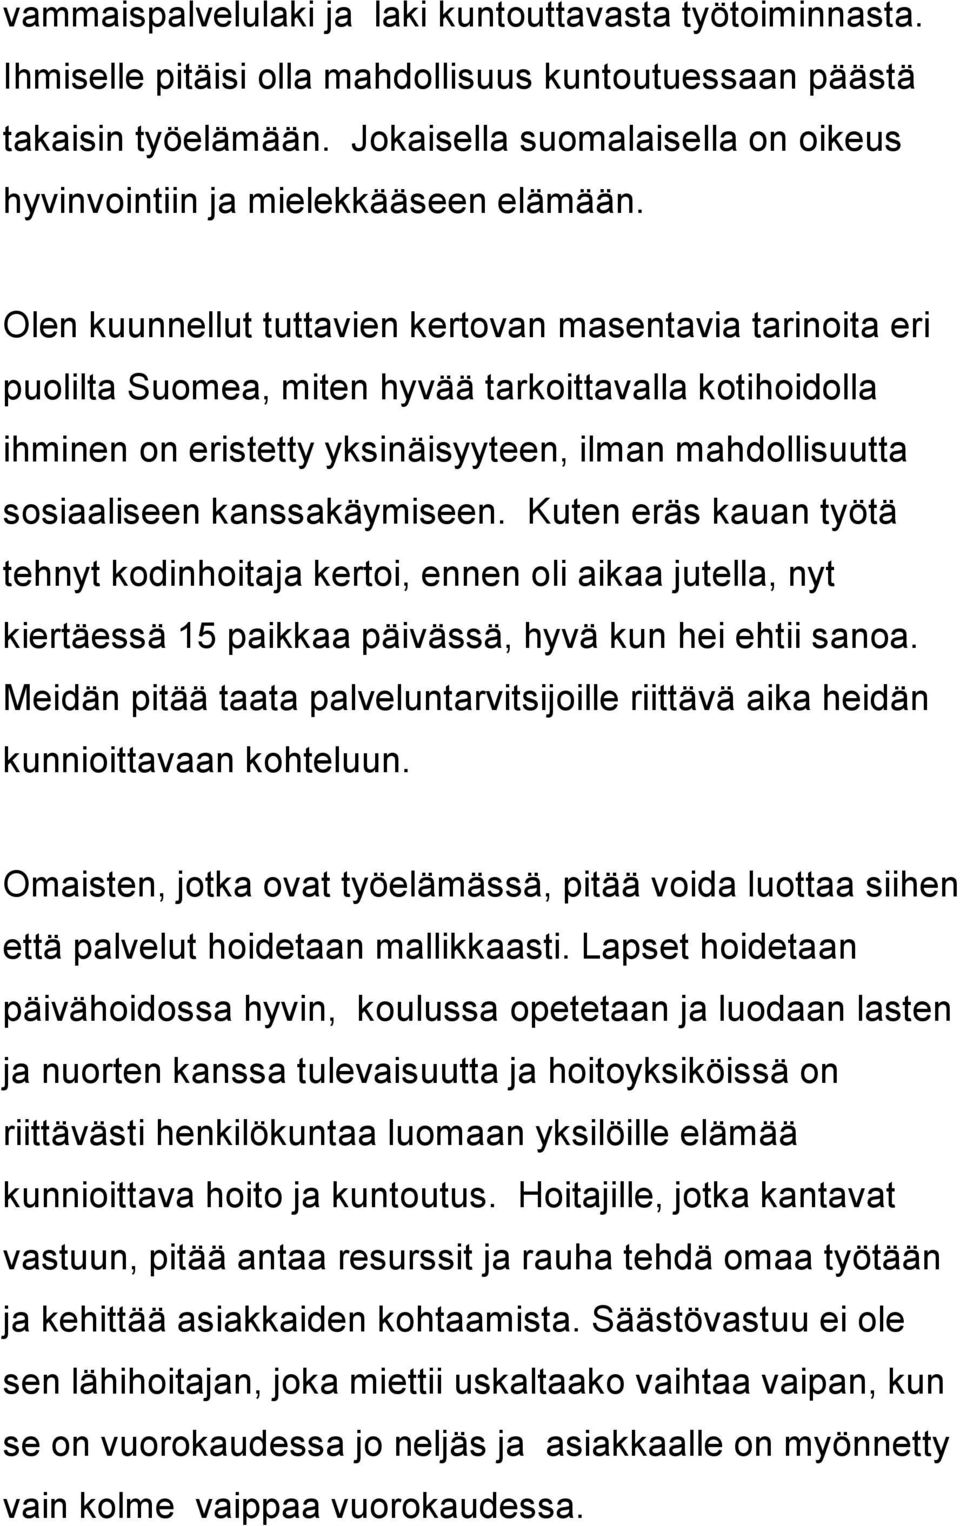 Olen kuunnellut tuttavien kertovan masentavia tarinoita eri puolilta Suomea, miten hyvää tarkoittavalla kotihoidolla ihminen on eristetty yksinäisyyteen, ilman mahdollisuutta sosiaaliseen